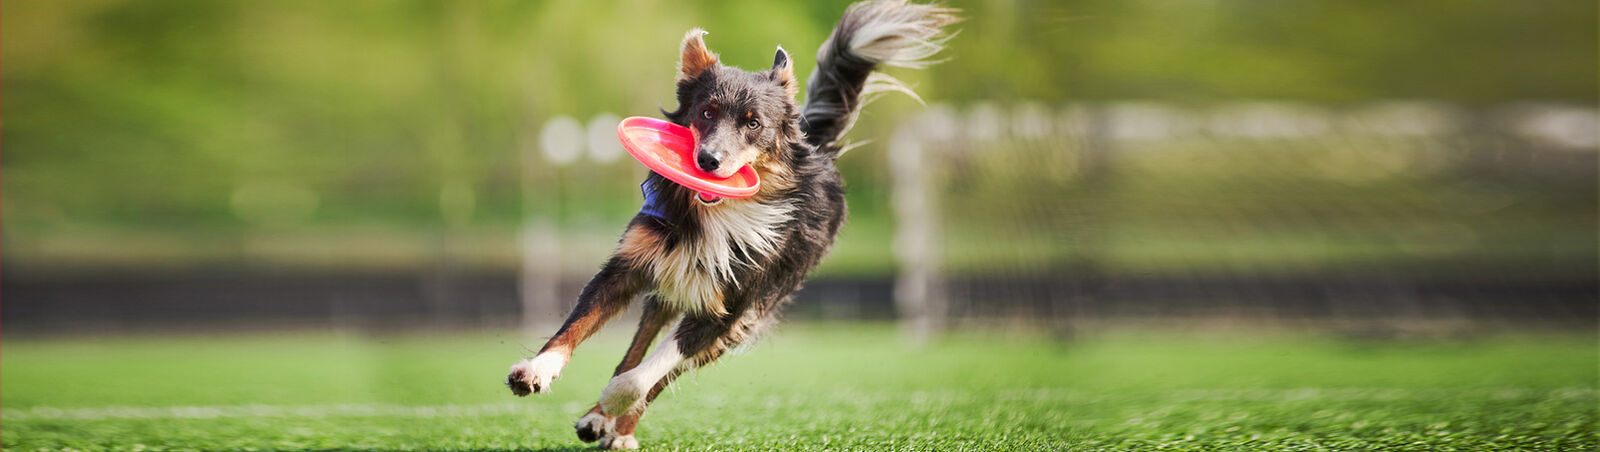 Ein Hund rennt mit einem Frisbee im Maul über einen Fußballplatz. 